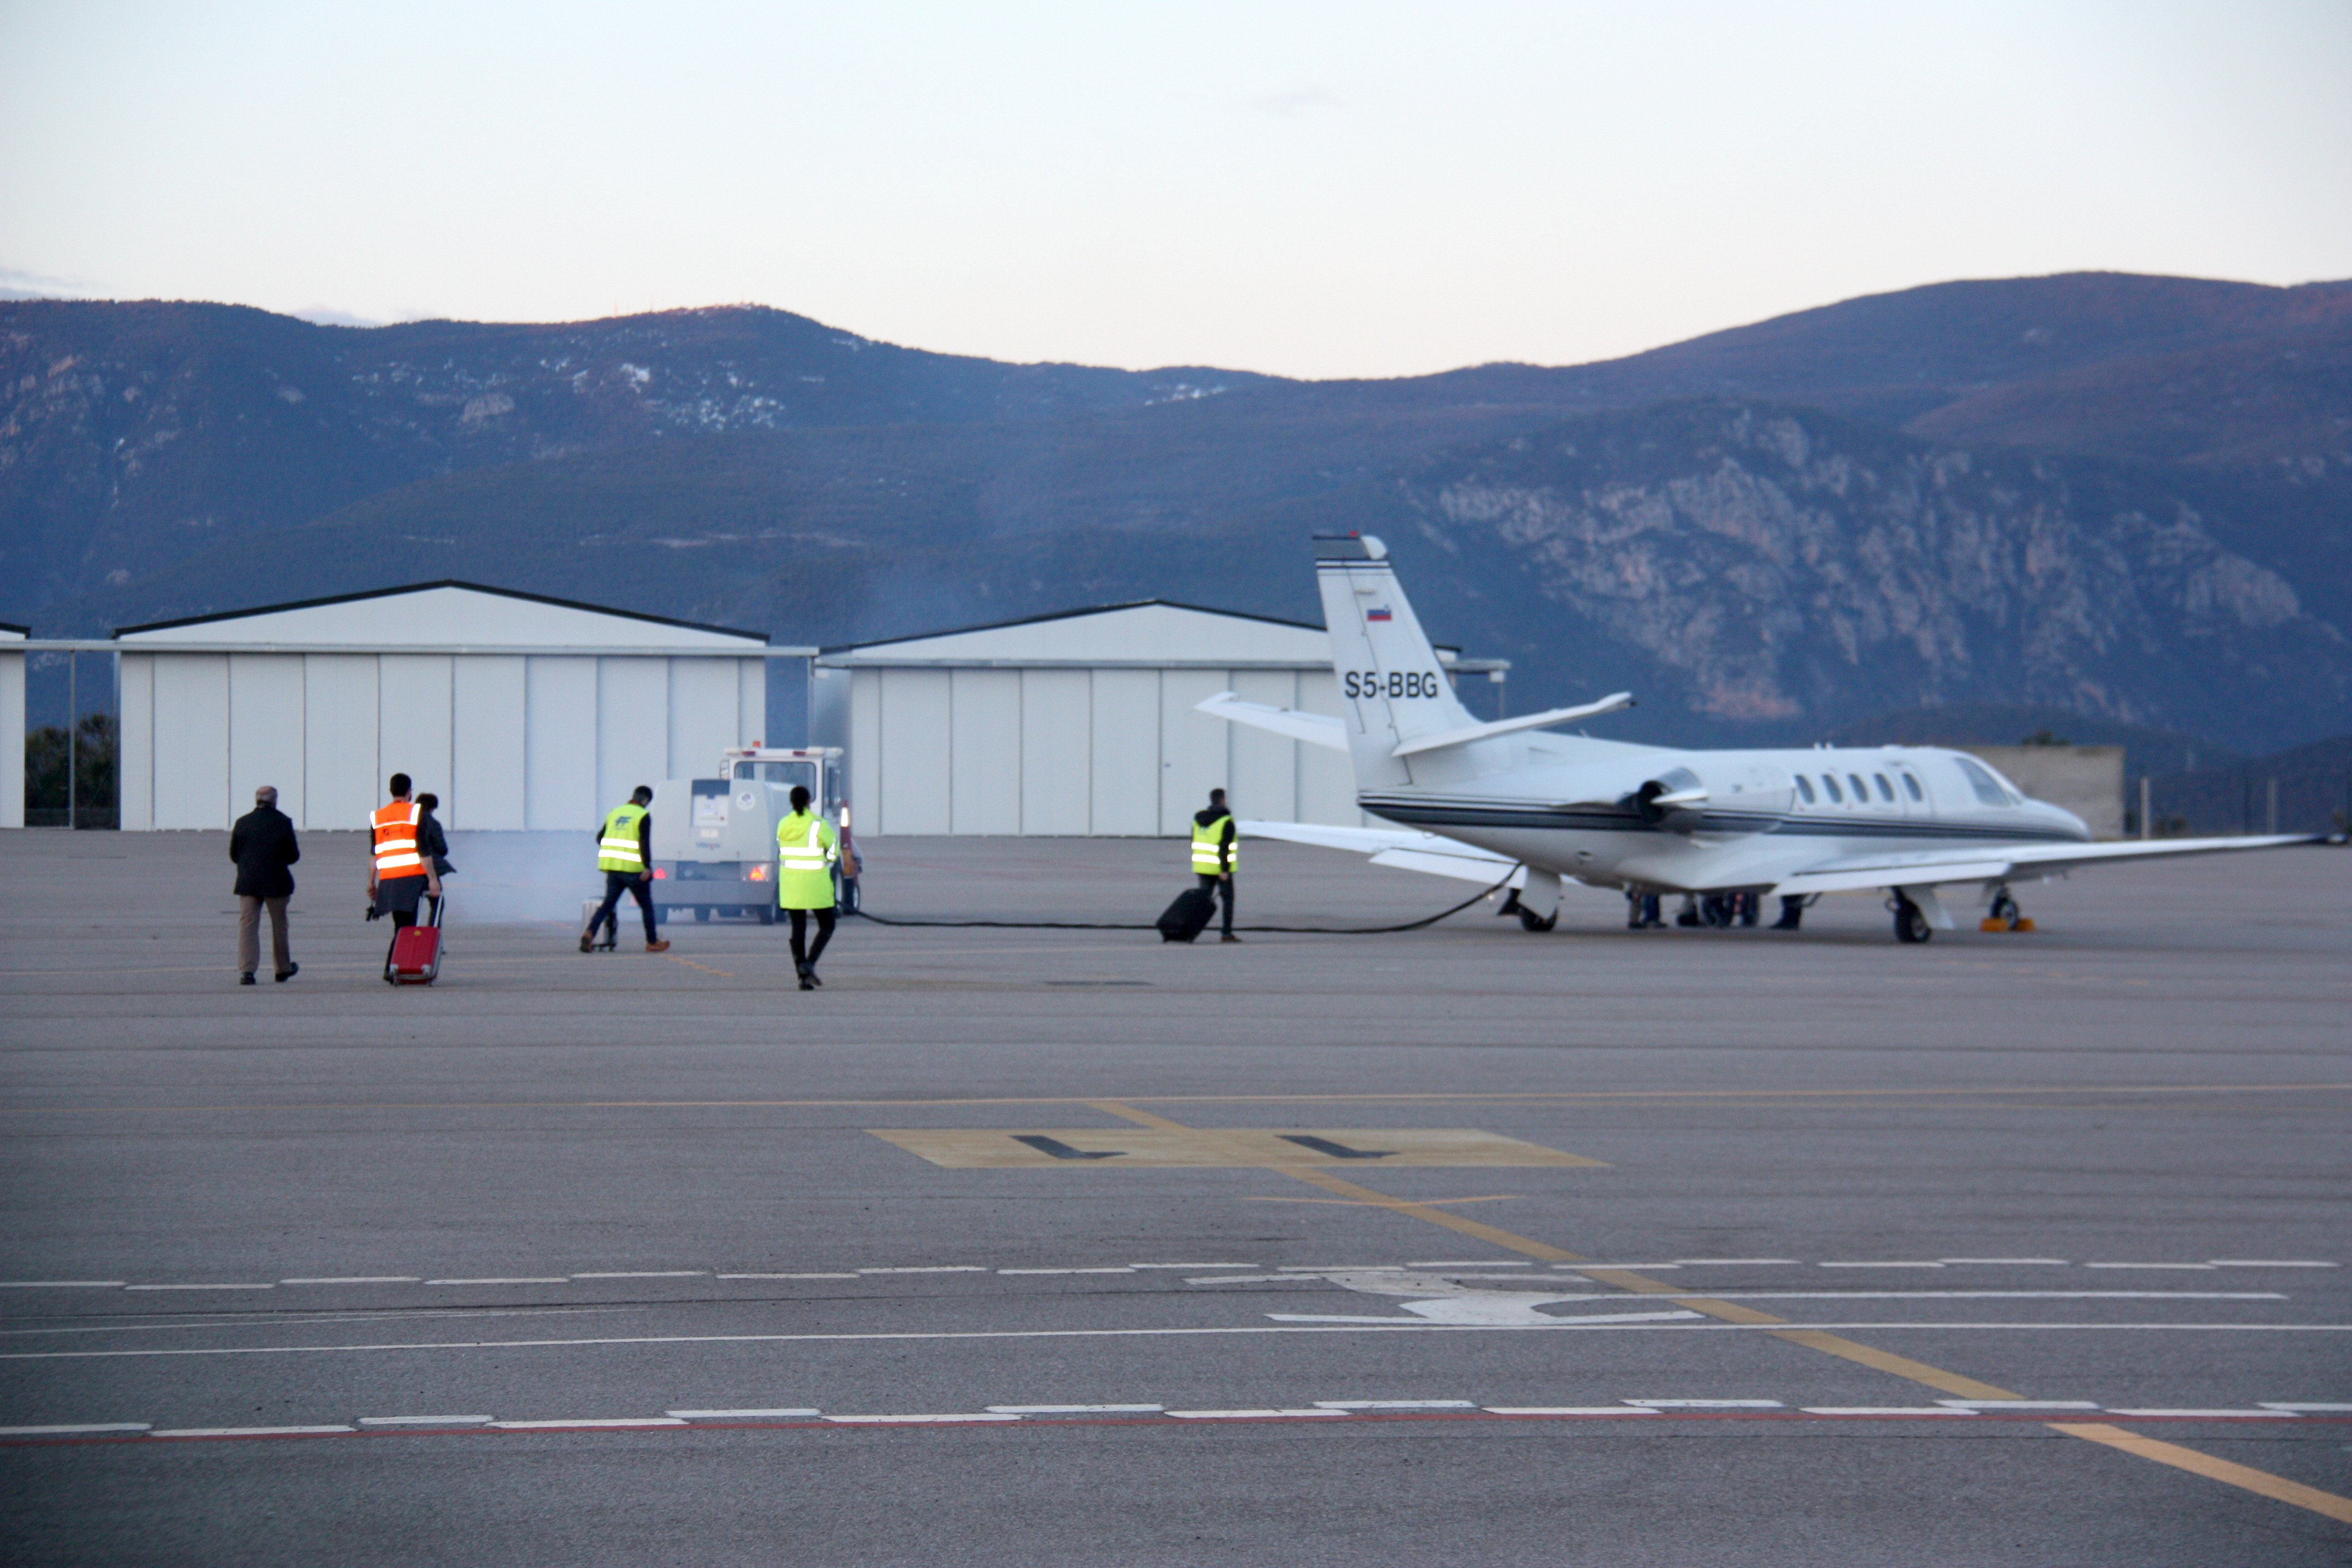 La compañía andorrana TSA opera desde hoy los vuelos La Seu-Palma de Mallorca